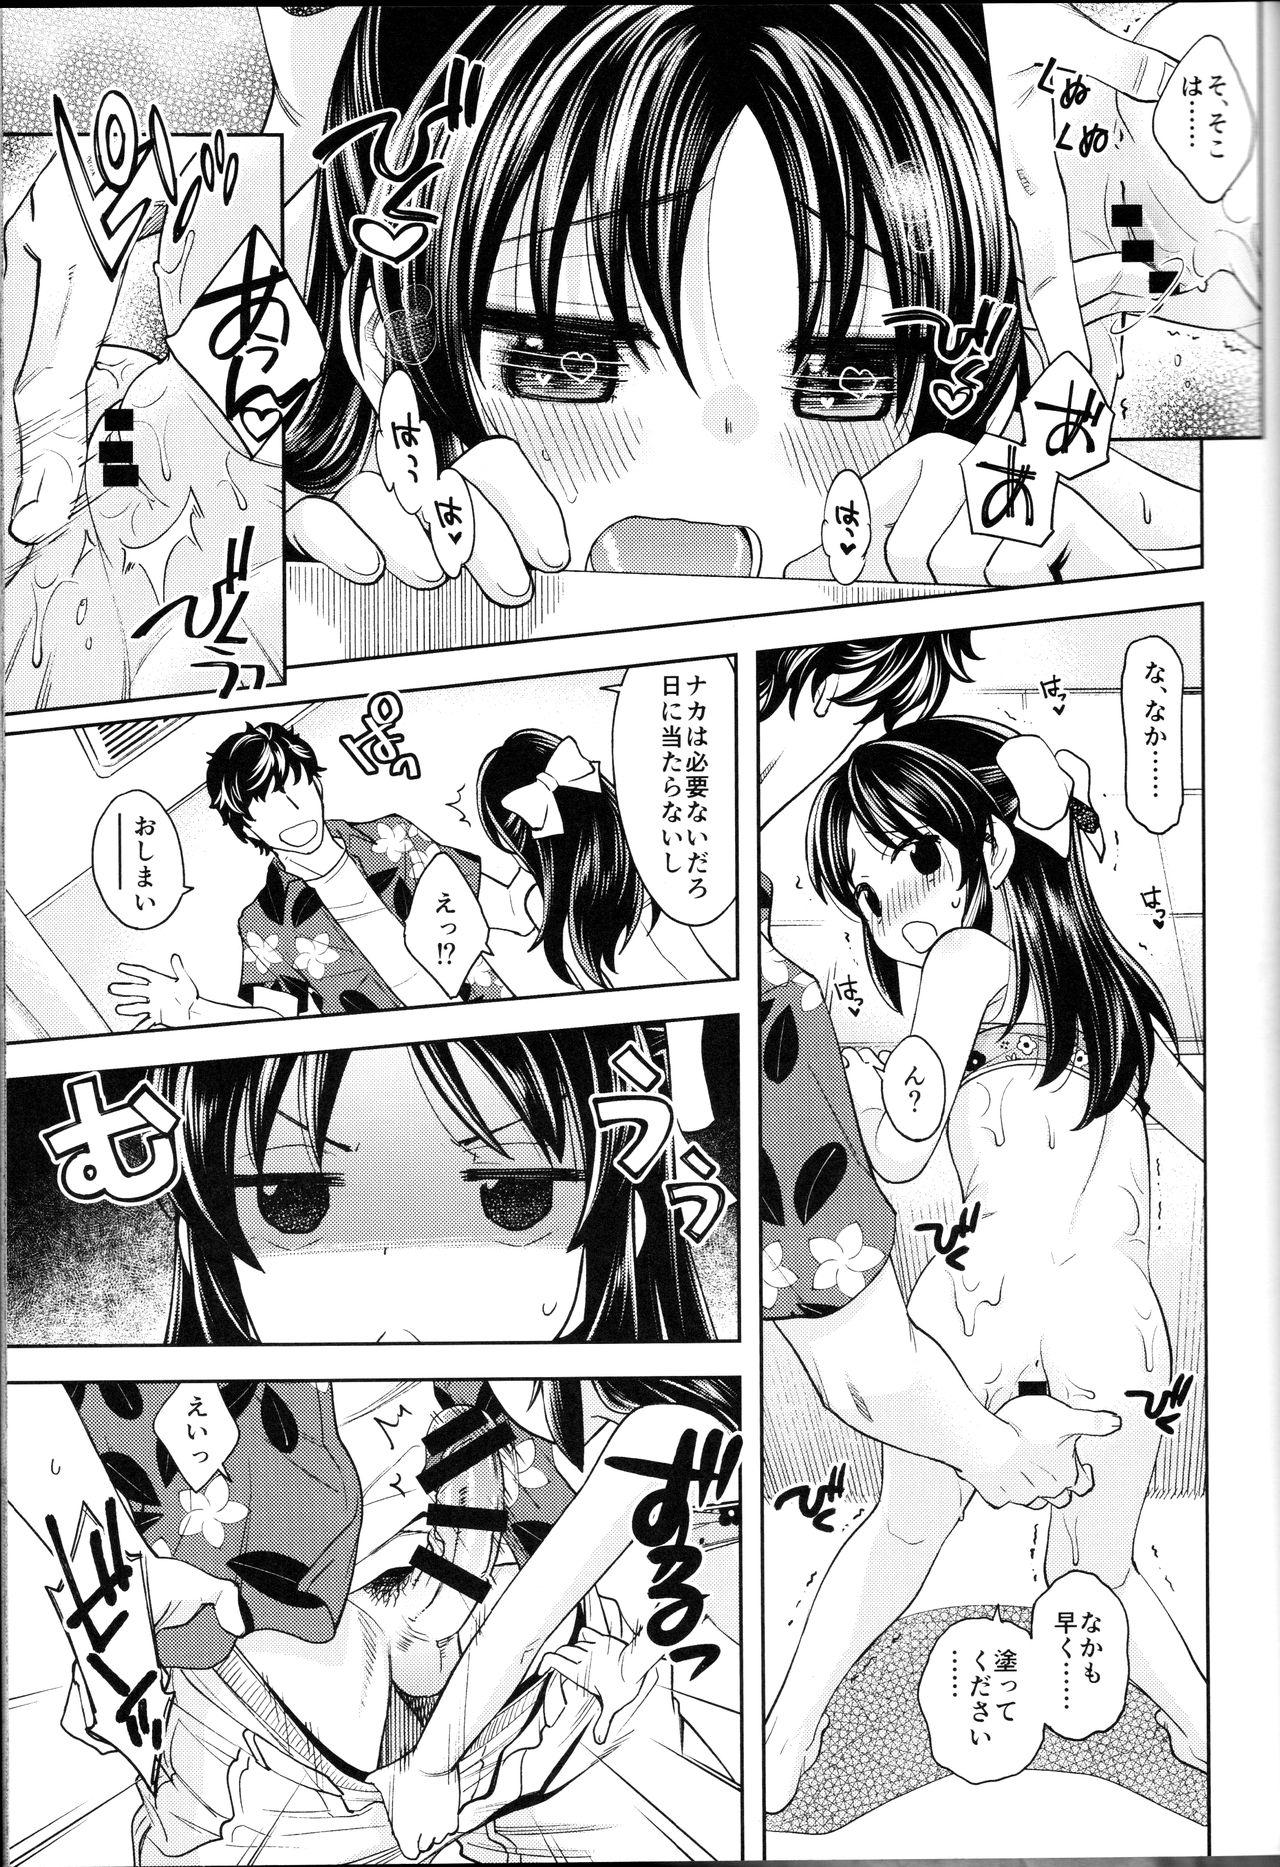 Chat Warui Ko Arisu 4 - The idolmaster Glasses - Page 8